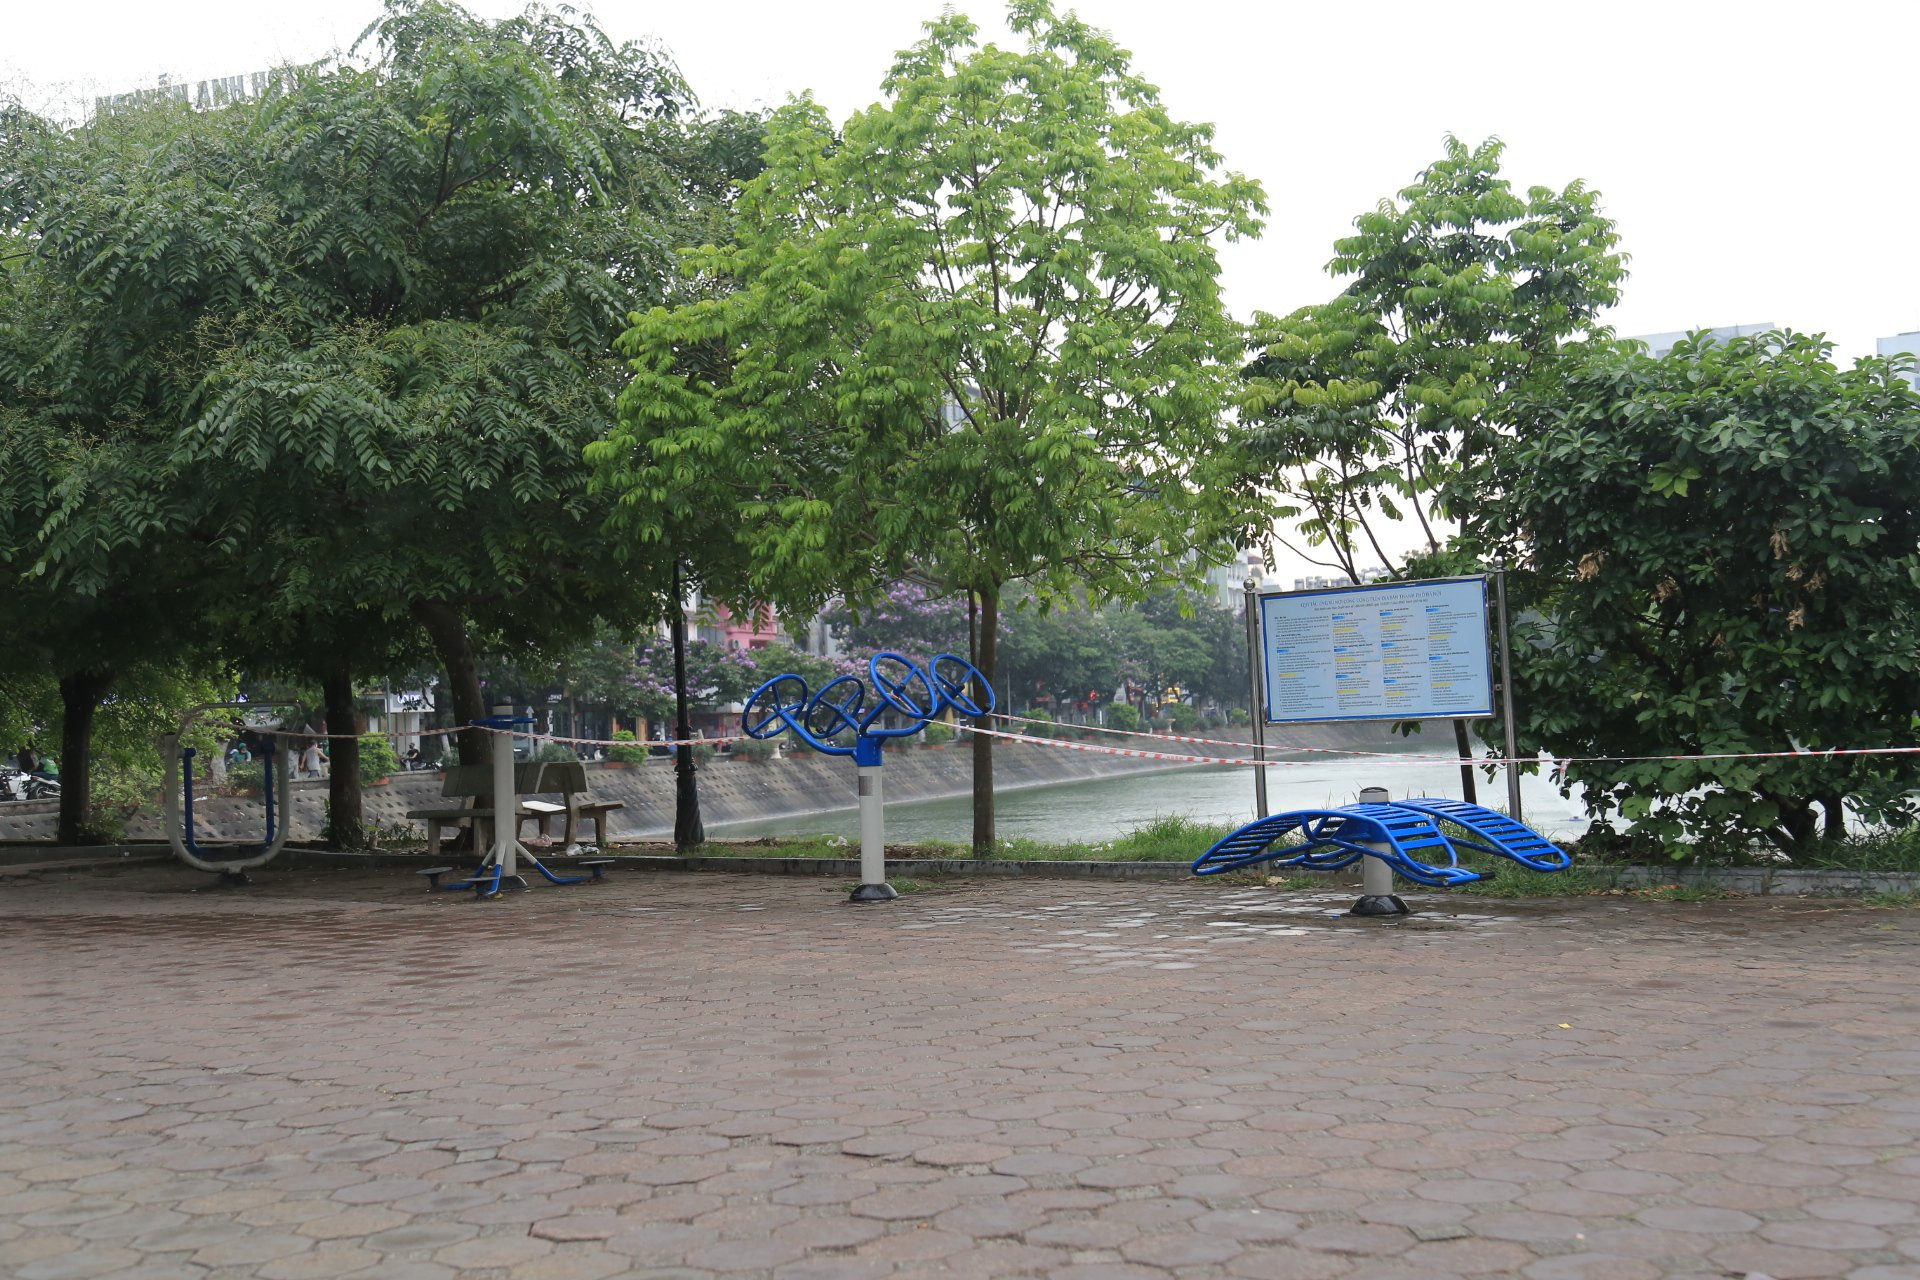 Tại 1 số khu vực khác trên địa bàn Hà Nội, các máy tập thể dục công cộng cũng đã được chăng dây, rào chắn để người dân không tập trung đông người, khuyến khích tập thể dục tại nhà.